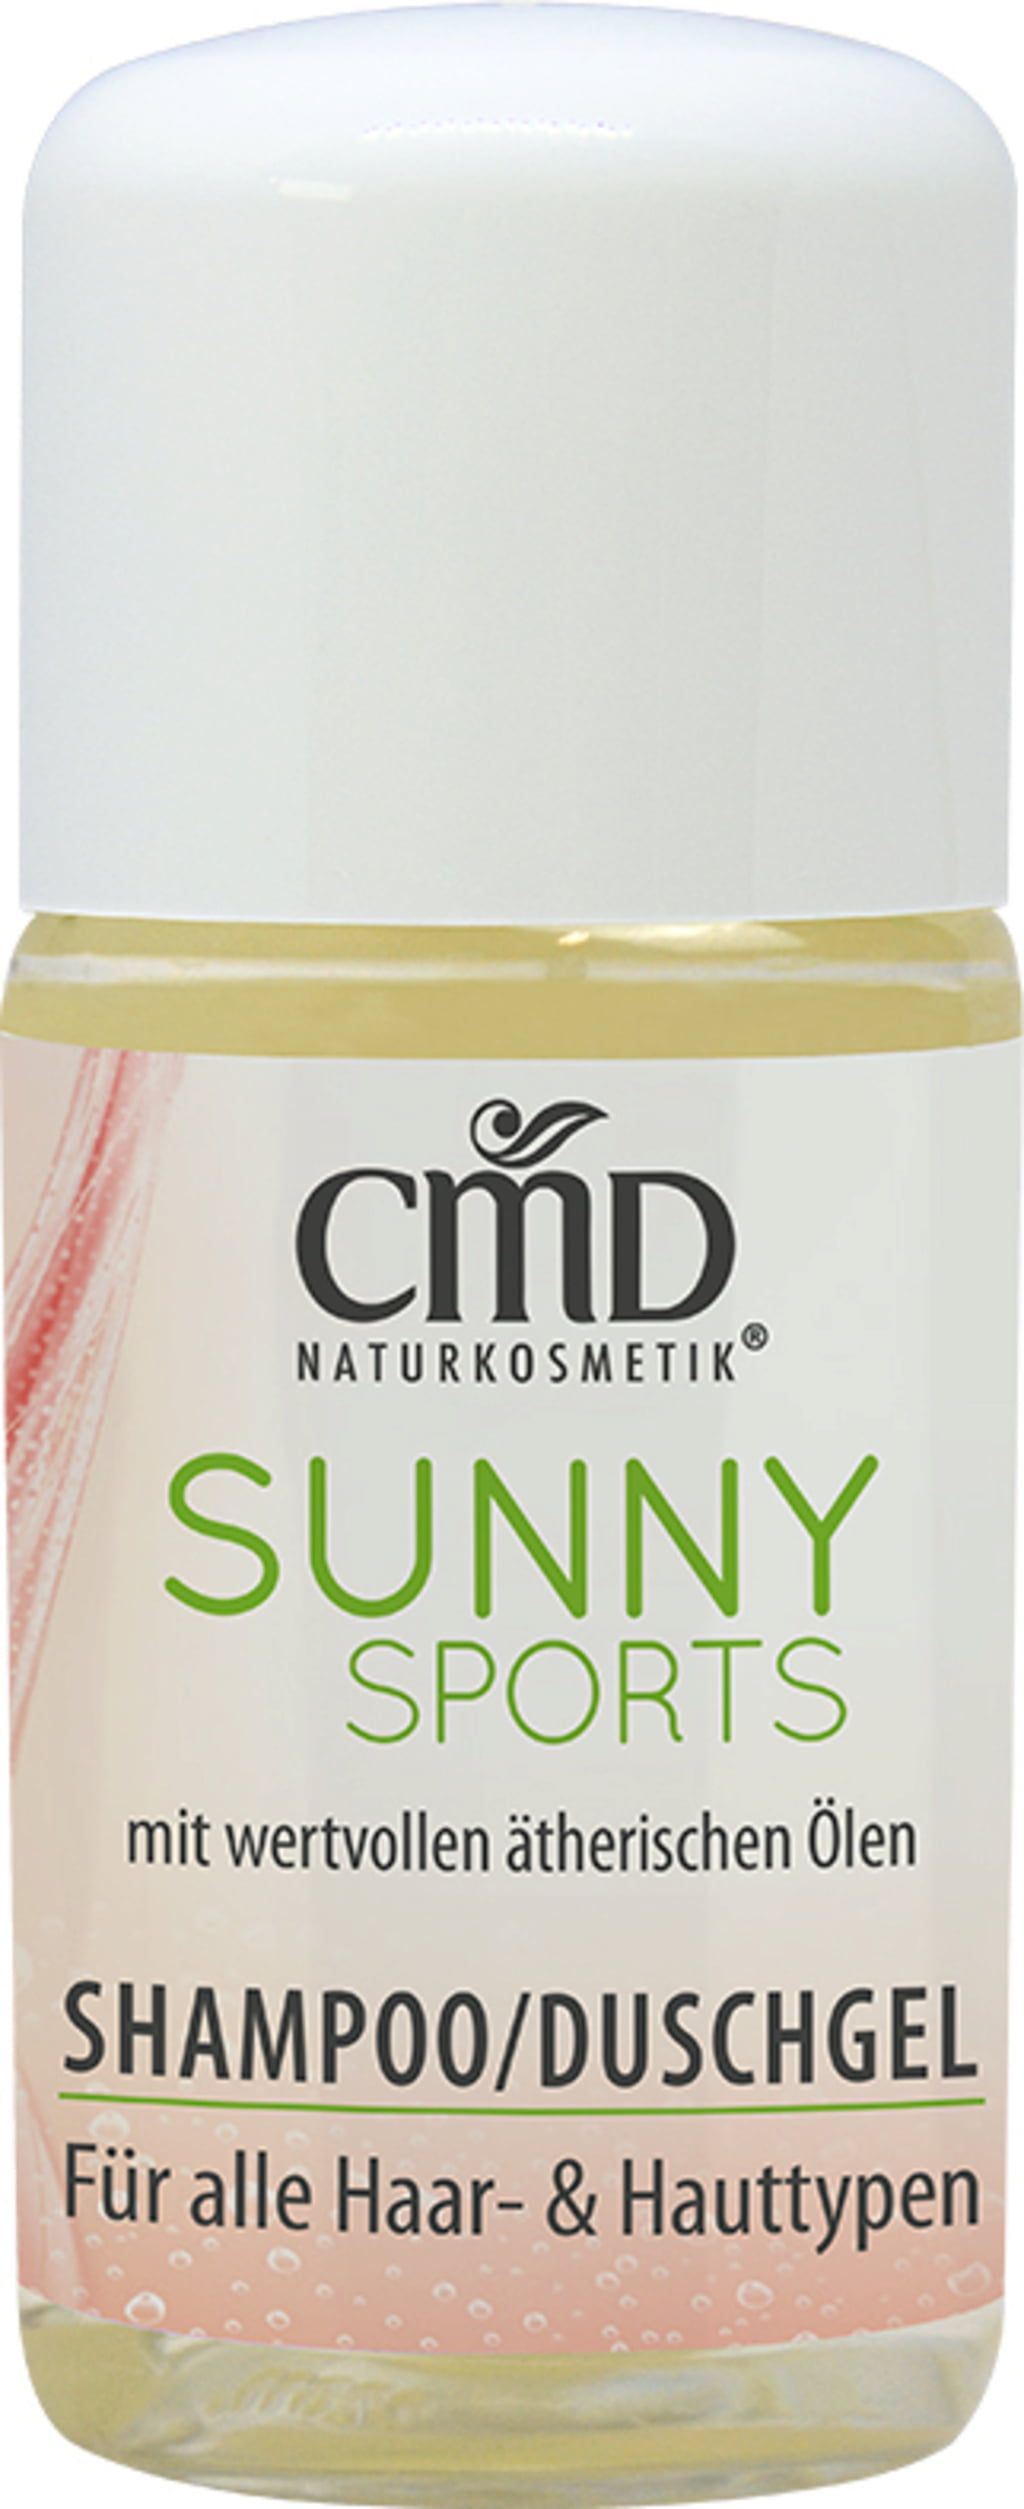 CMD Naturkosmetik Sunny Sports Shampoo & Duschgel - 30 ml